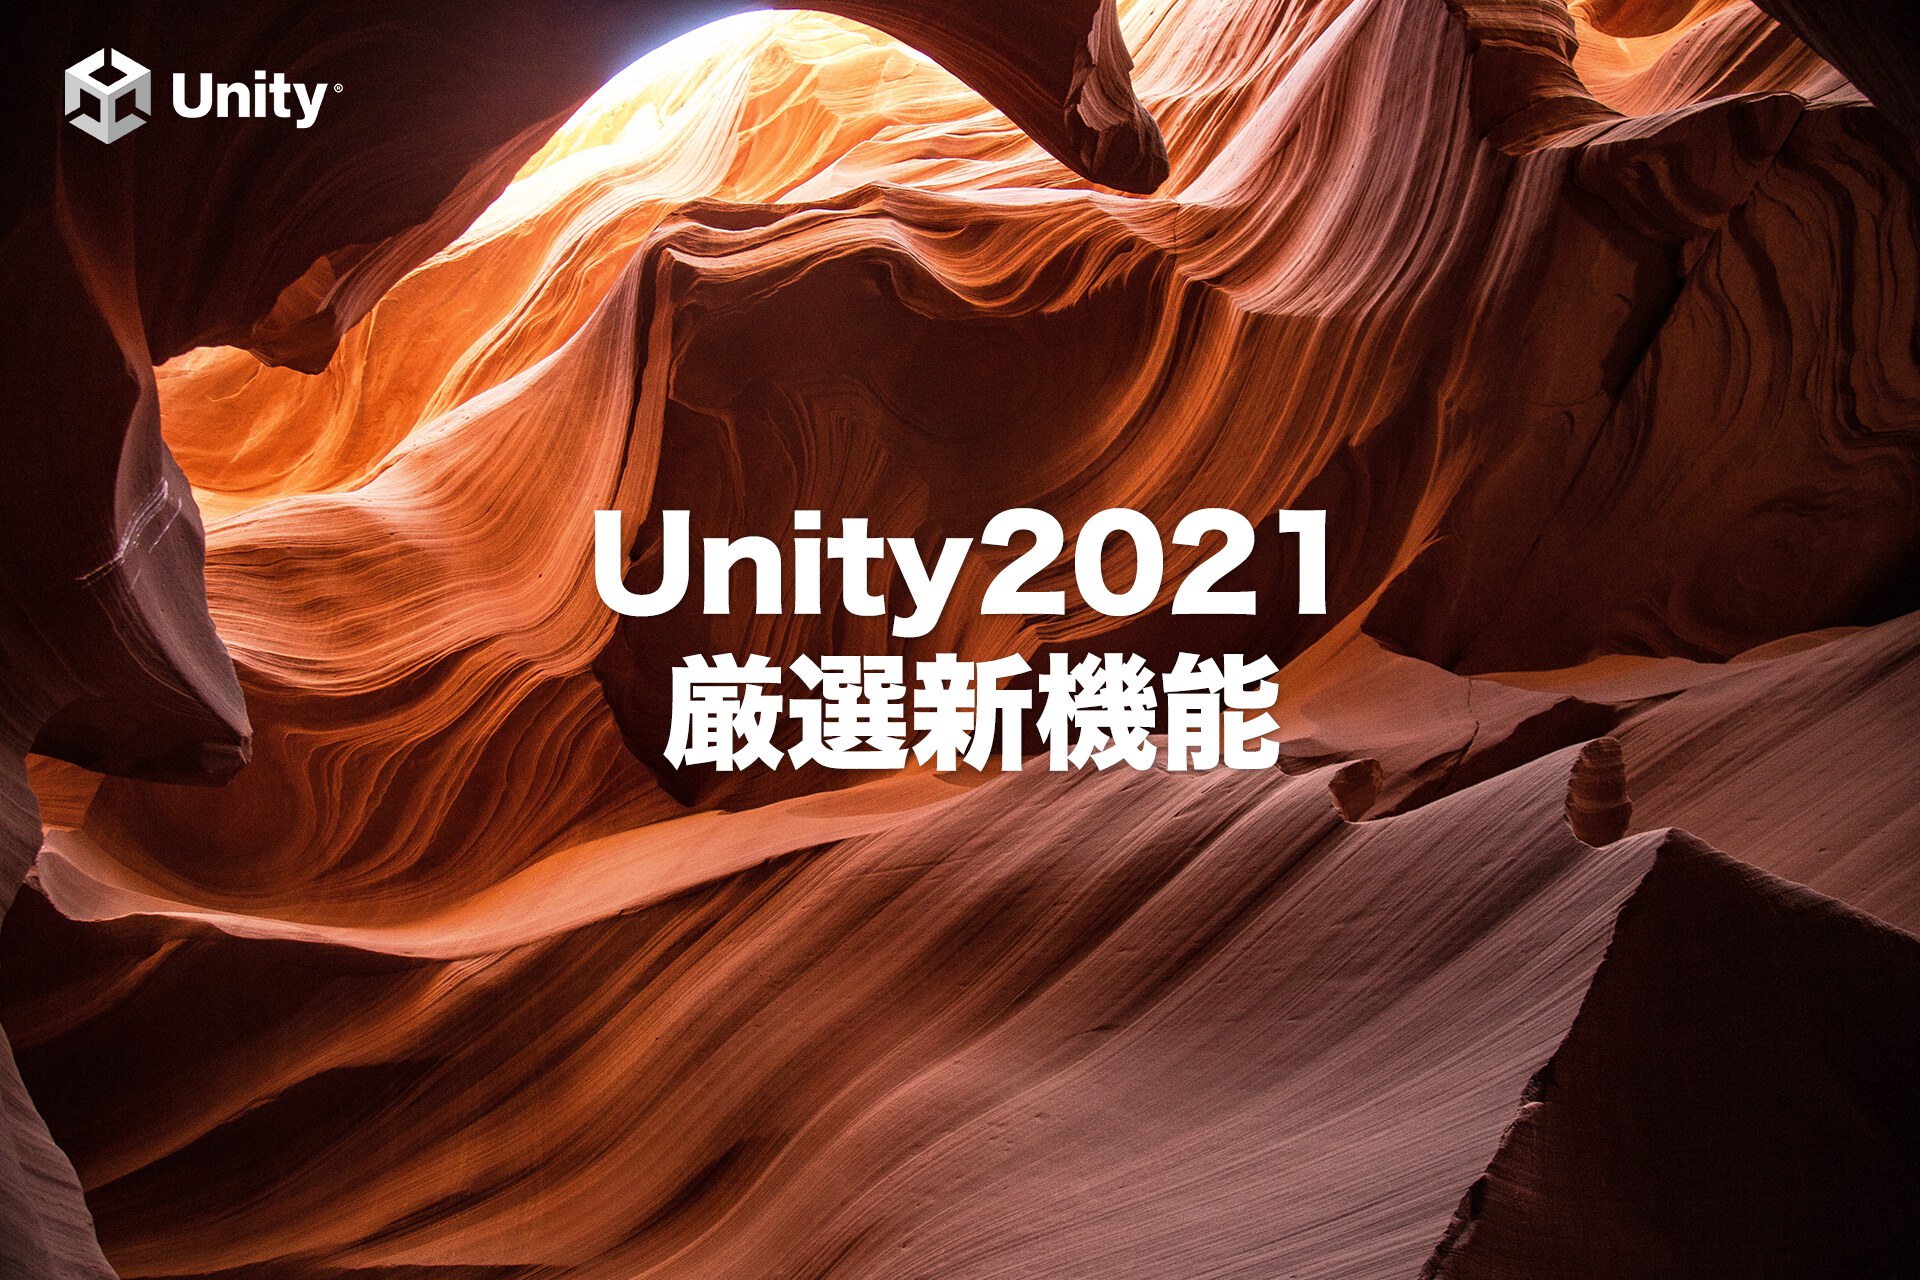 【知らなきゃ損】Unity2021覚えておきたい新機能4選と1つの事実